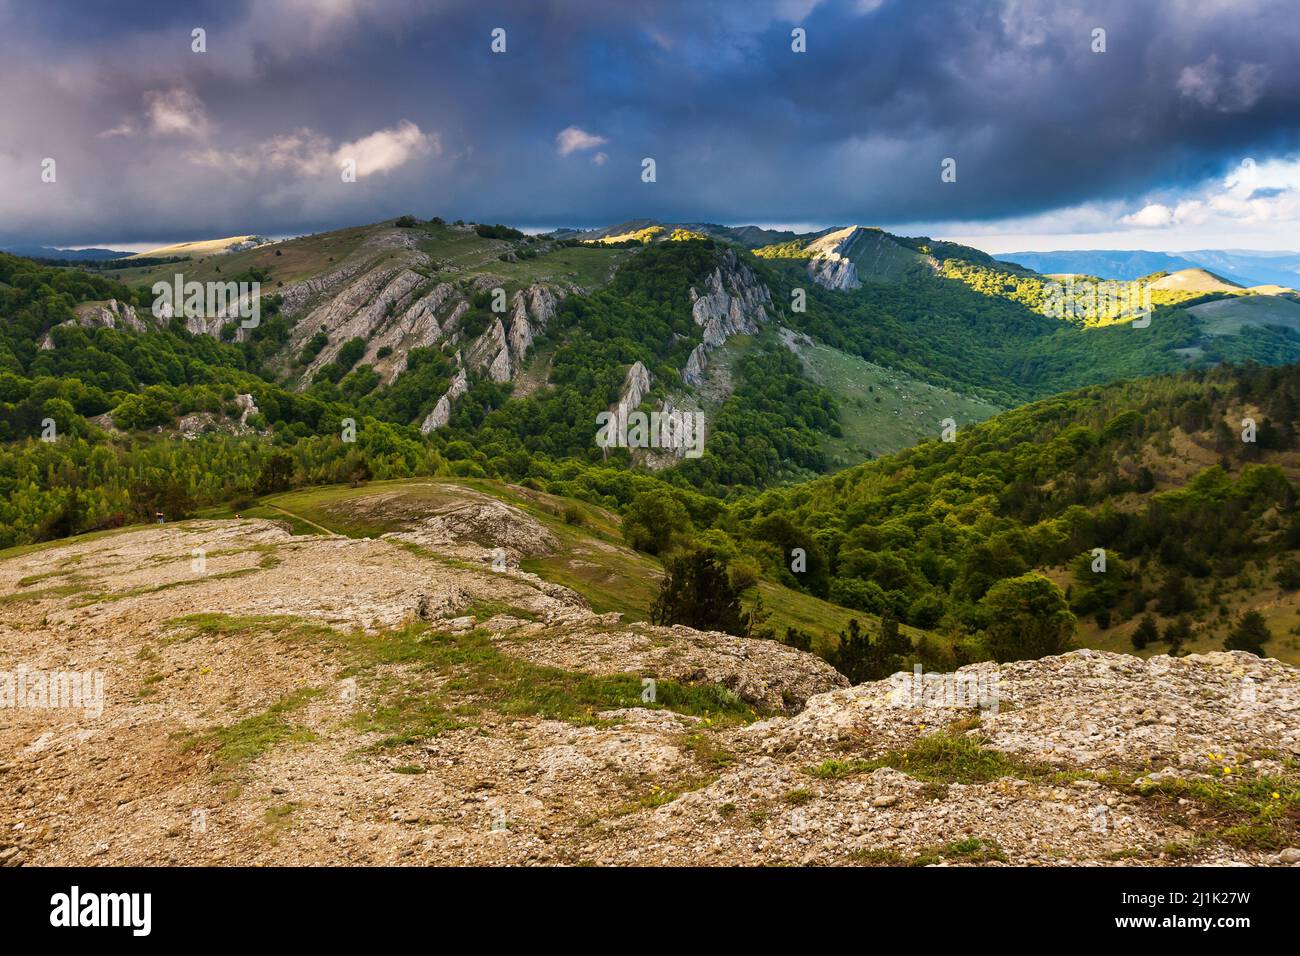 Splendida vista sul paesaggio rurale alpino. Cielo coperto prima della tempesta. Crimea, Ucraina, Europa. Mondo di bellezza. Foto Stock